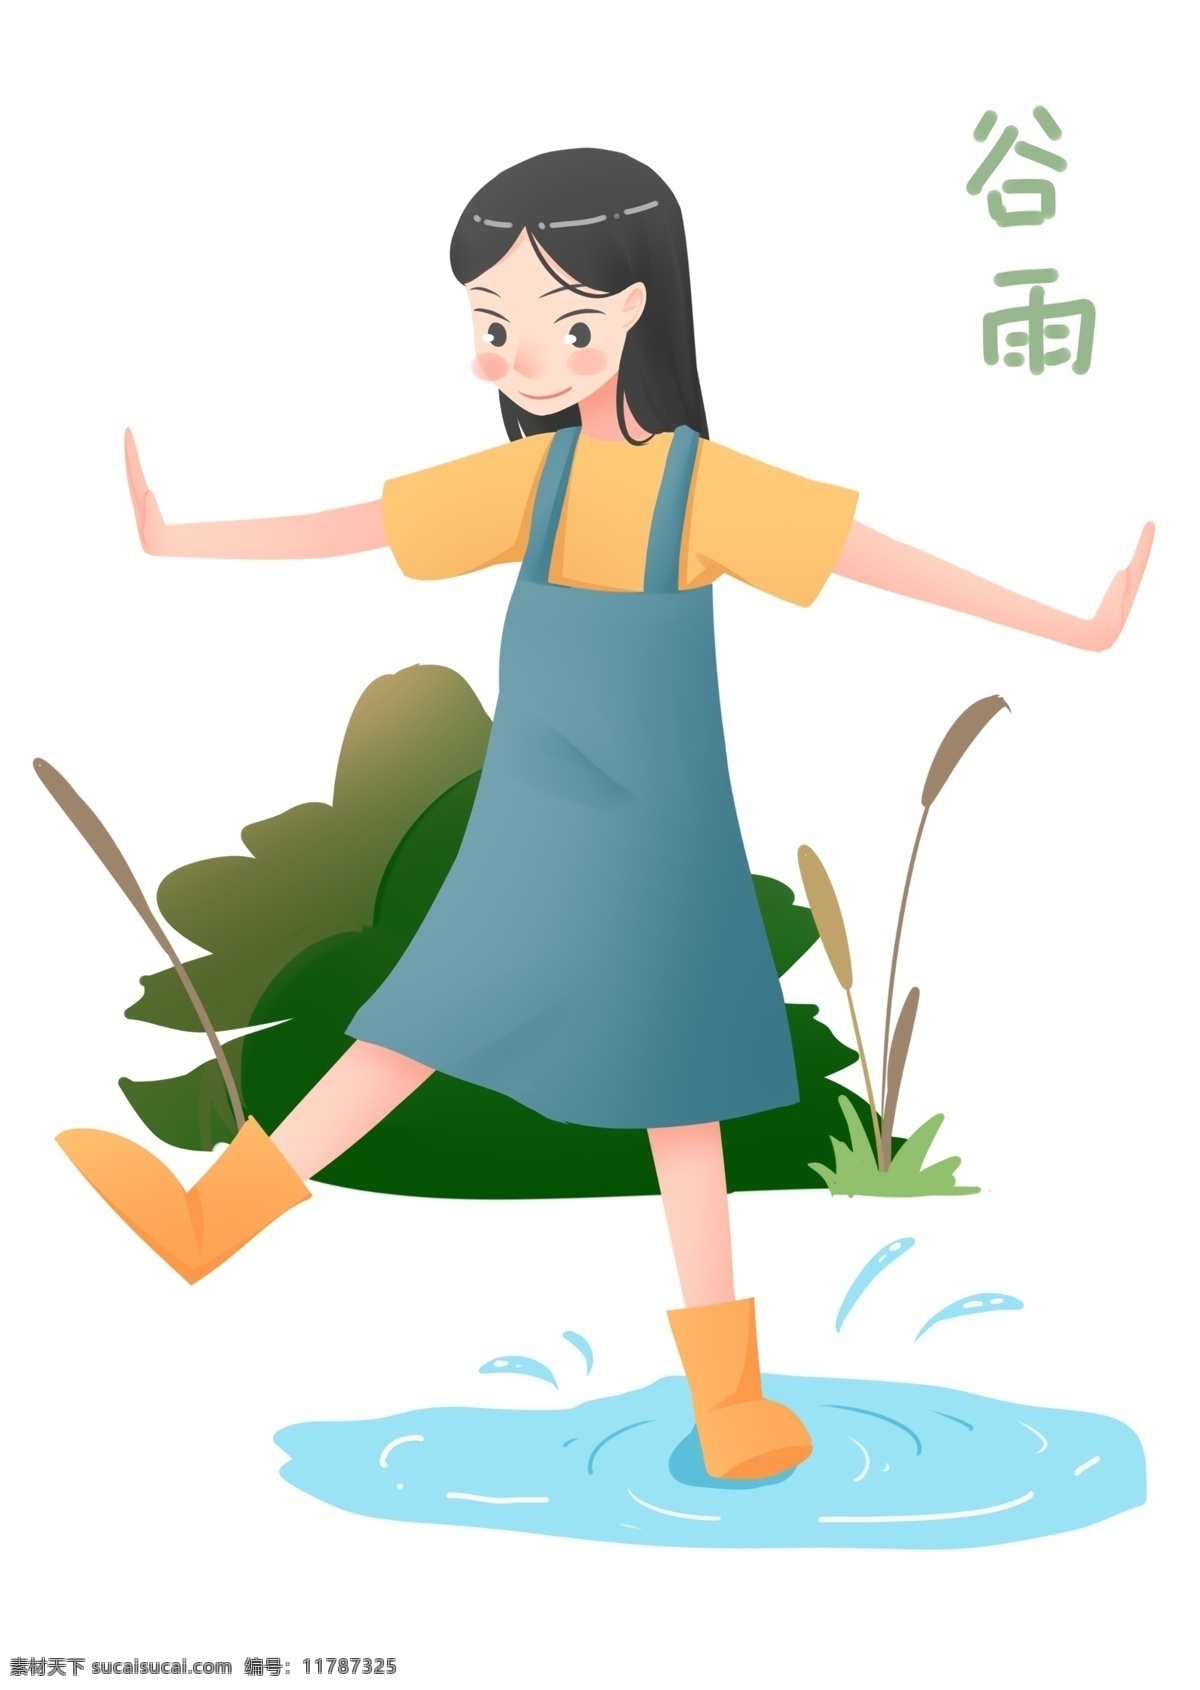 谷雨 踩水 坑 小女孩 插画 浅蓝色水坑 植物装饰 谷雨插画 节日装饰 绿色植物 黄色雨靴